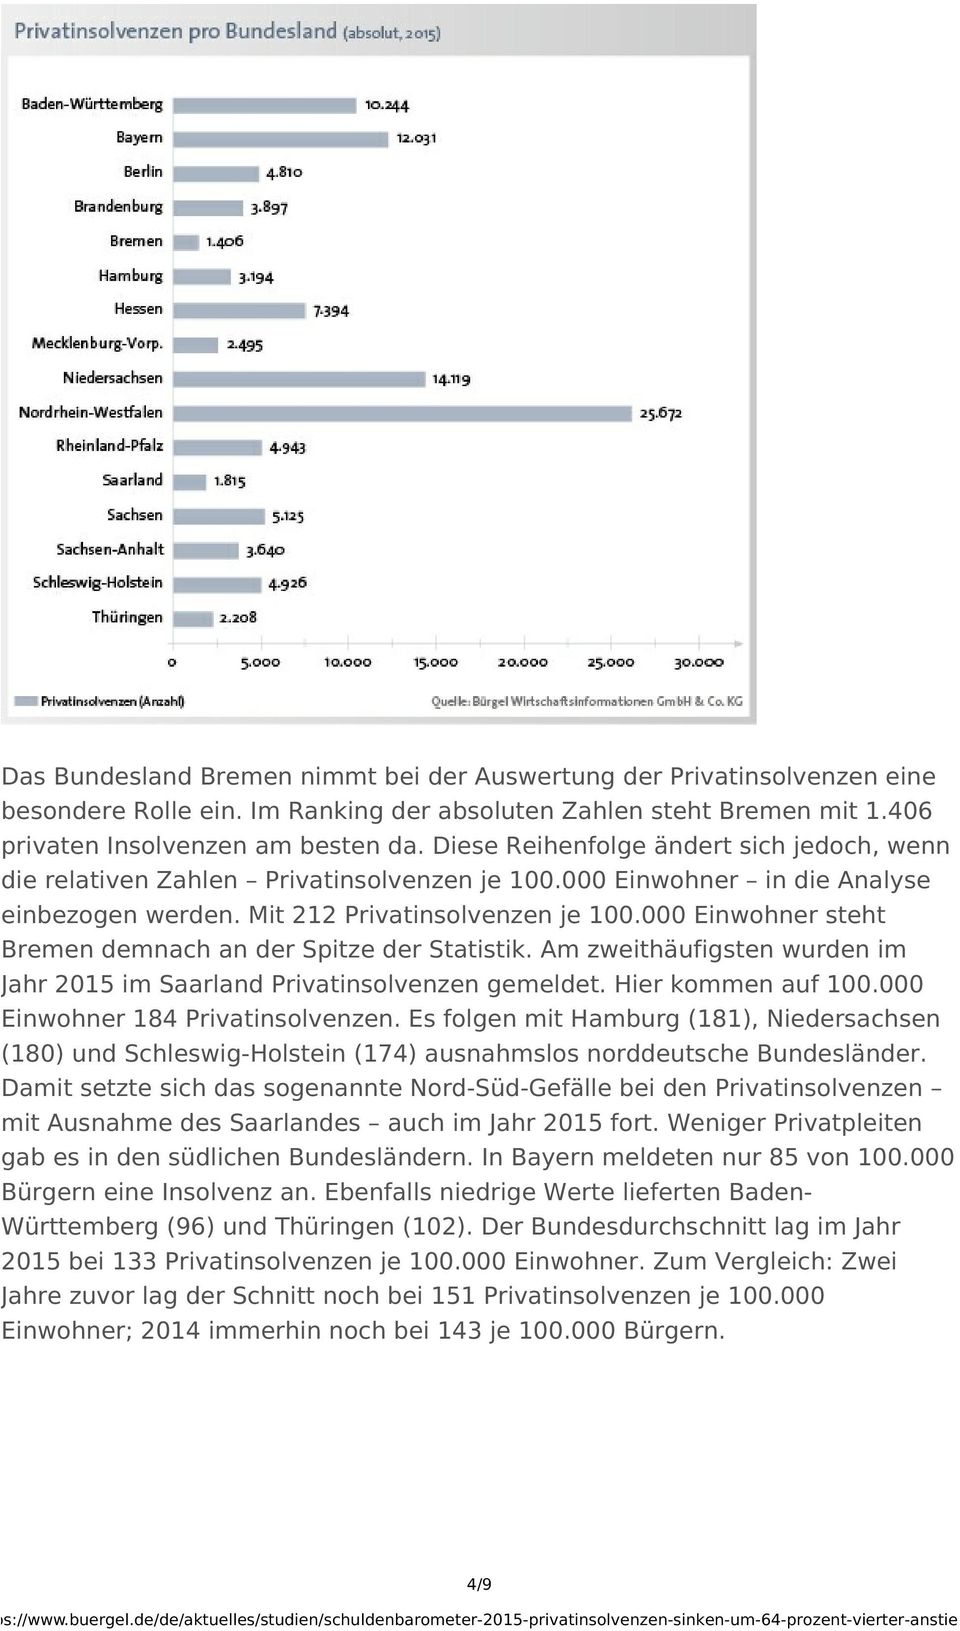 000 Einwohner steht Bremen demnach an der Spitze der Statistik. Am zweithäufigsten wurden im Jahr 2015 im Saarland Privatinsolvenzen gemeldet. Hier kommen auf 100.000 Einwohner 184 Privatinsolvenzen.